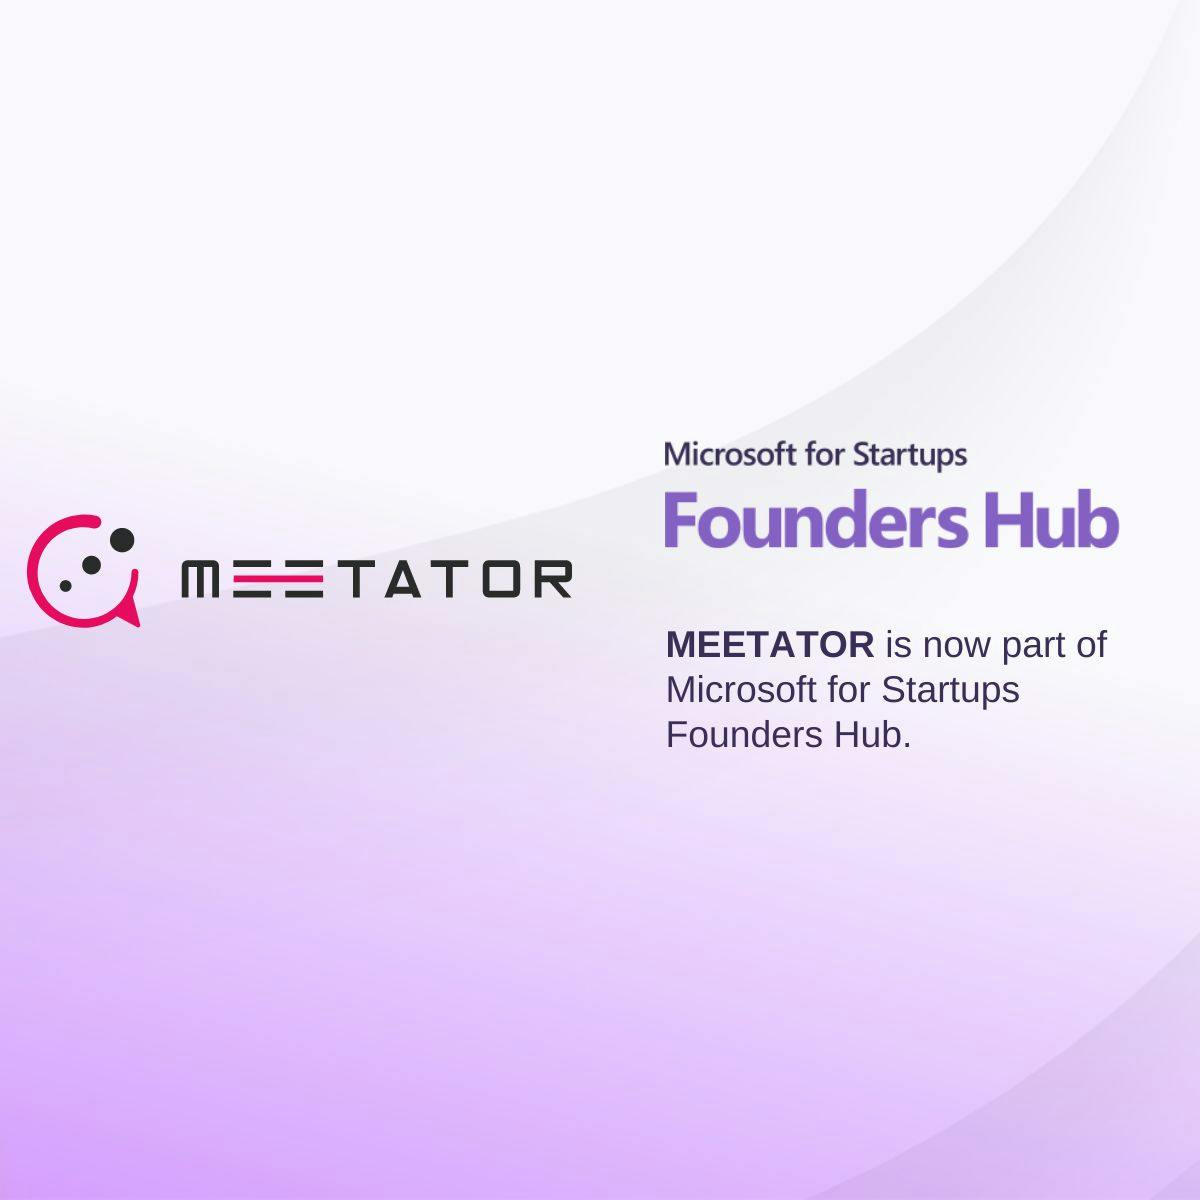 Meetator_MS Hub.jpeg